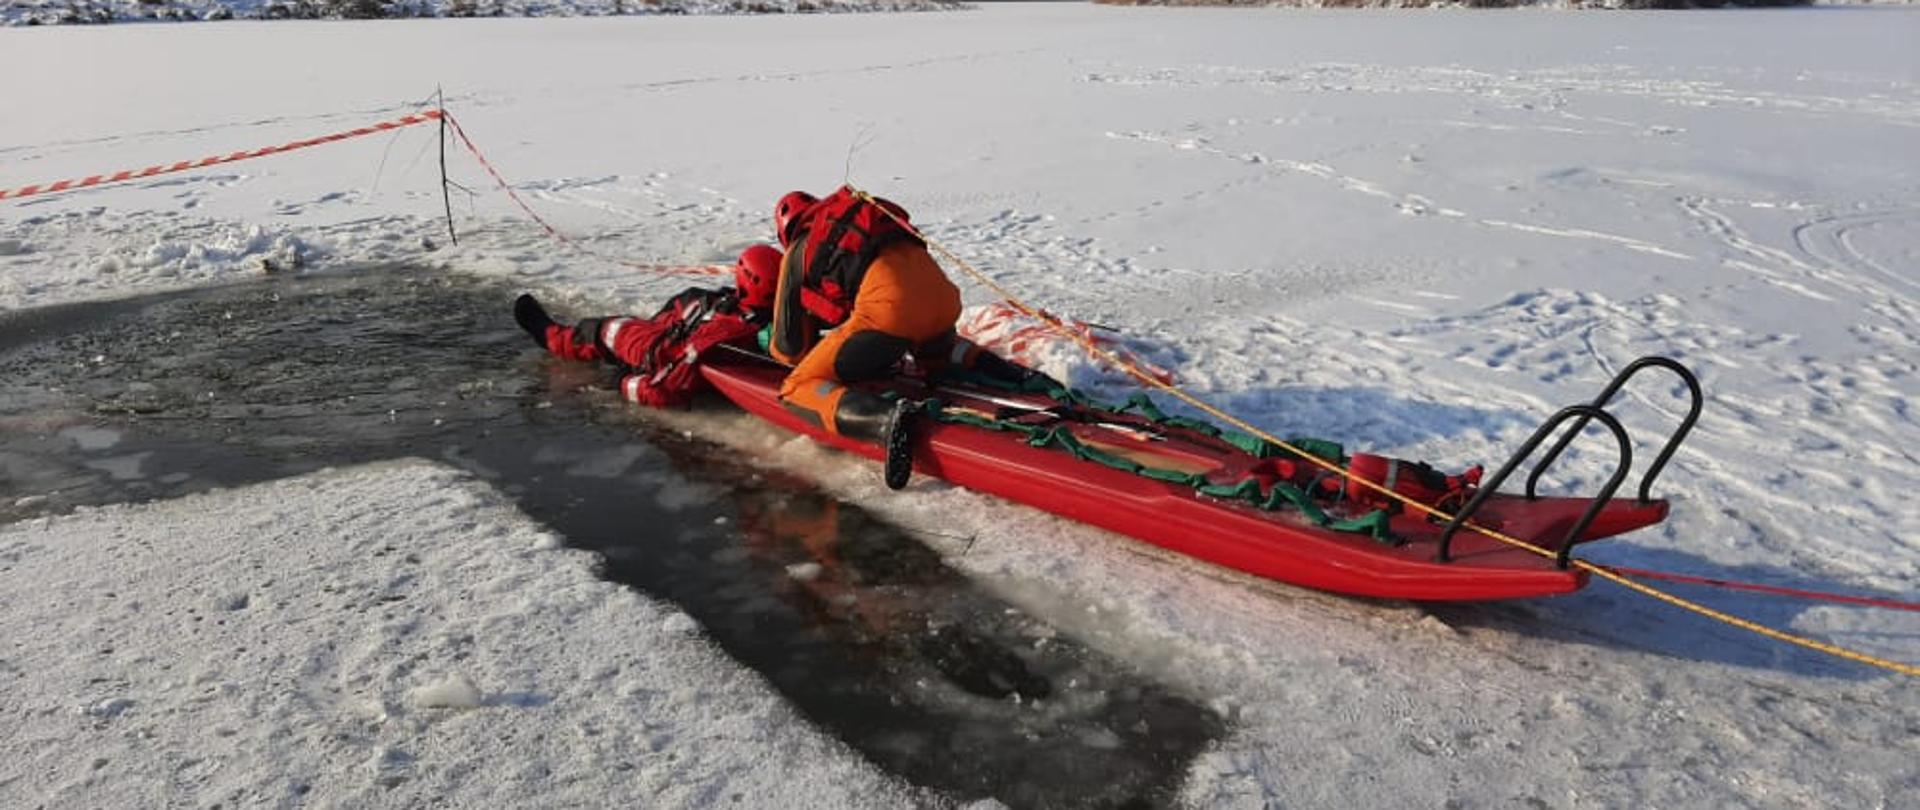 Komenda Powiatowa PSP w Pińczowie zorganizowała ćwiczenia praktyczne z zakresu ratownictwa lodowego na terenie zalewu wodnego Ośrodka Sportu i Rekreacji w Pińczowie